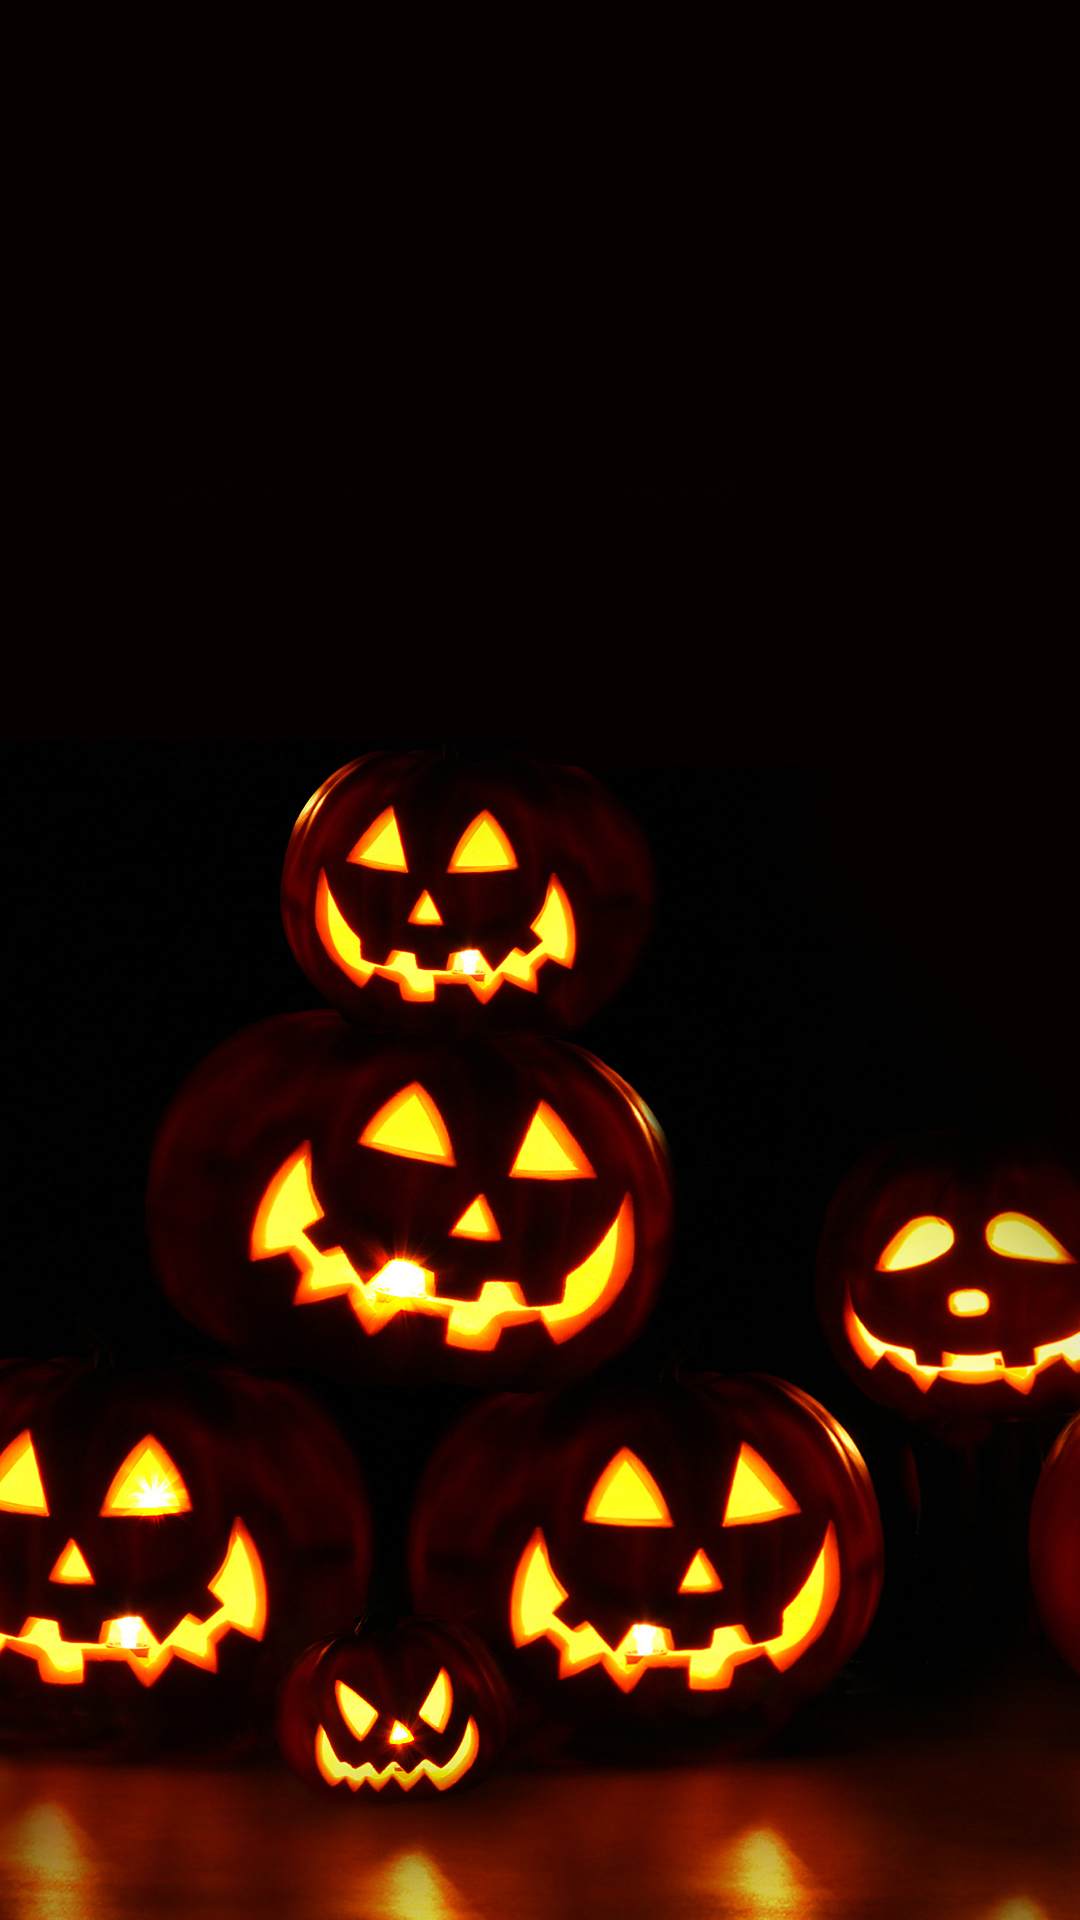 ScaryHalloweenPumpkinMasksiPhoneWallpaper  Halloween wallpaper  iphone Halloween wallpaper backgrounds Pumpkin wallpaper